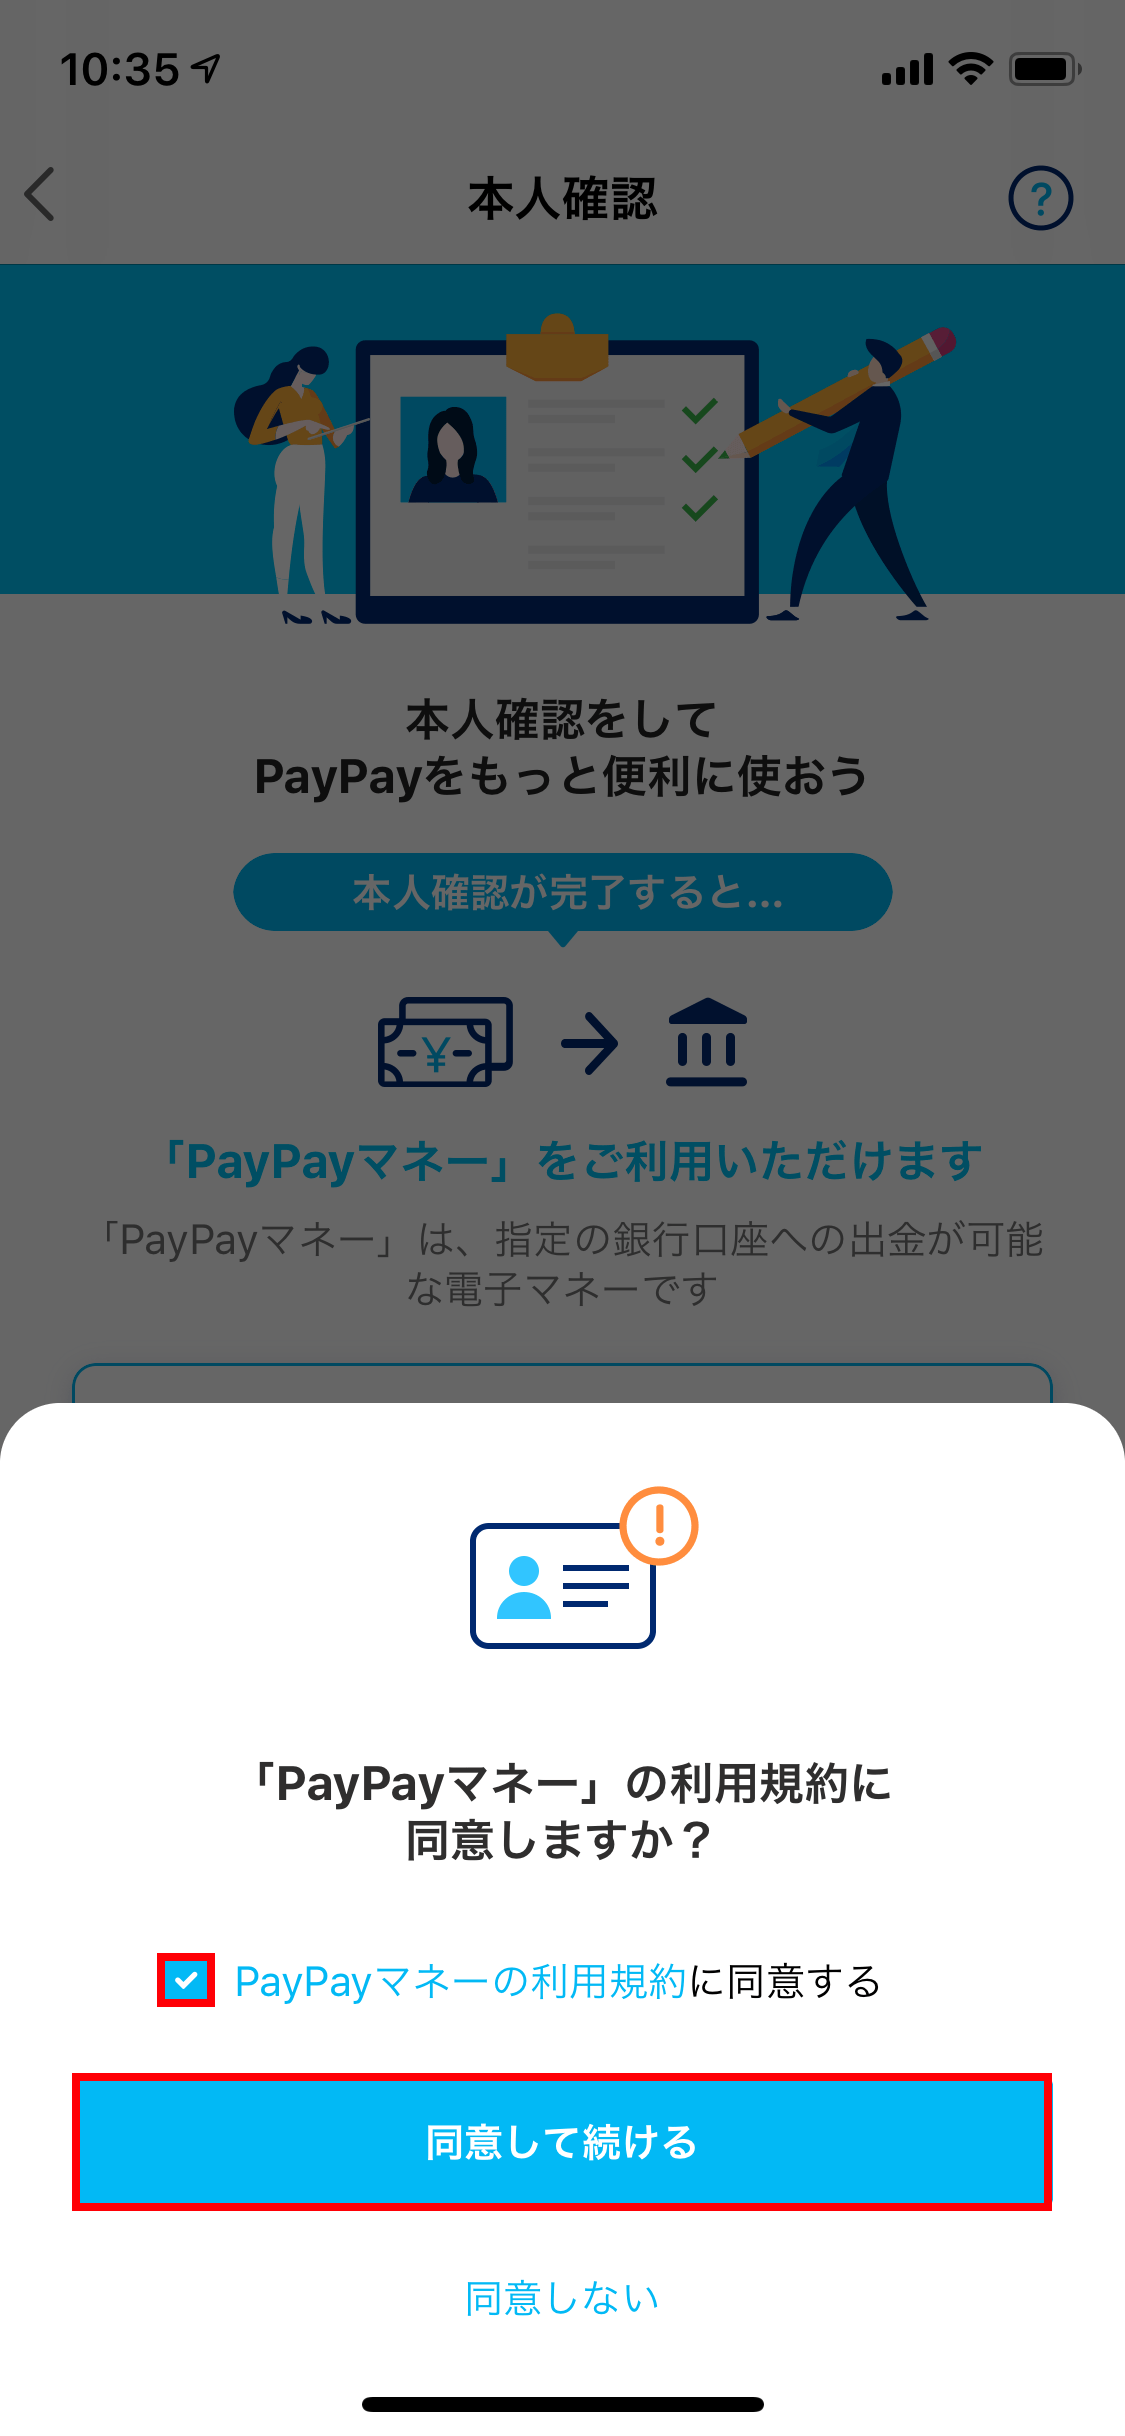 PayPay 本人確認